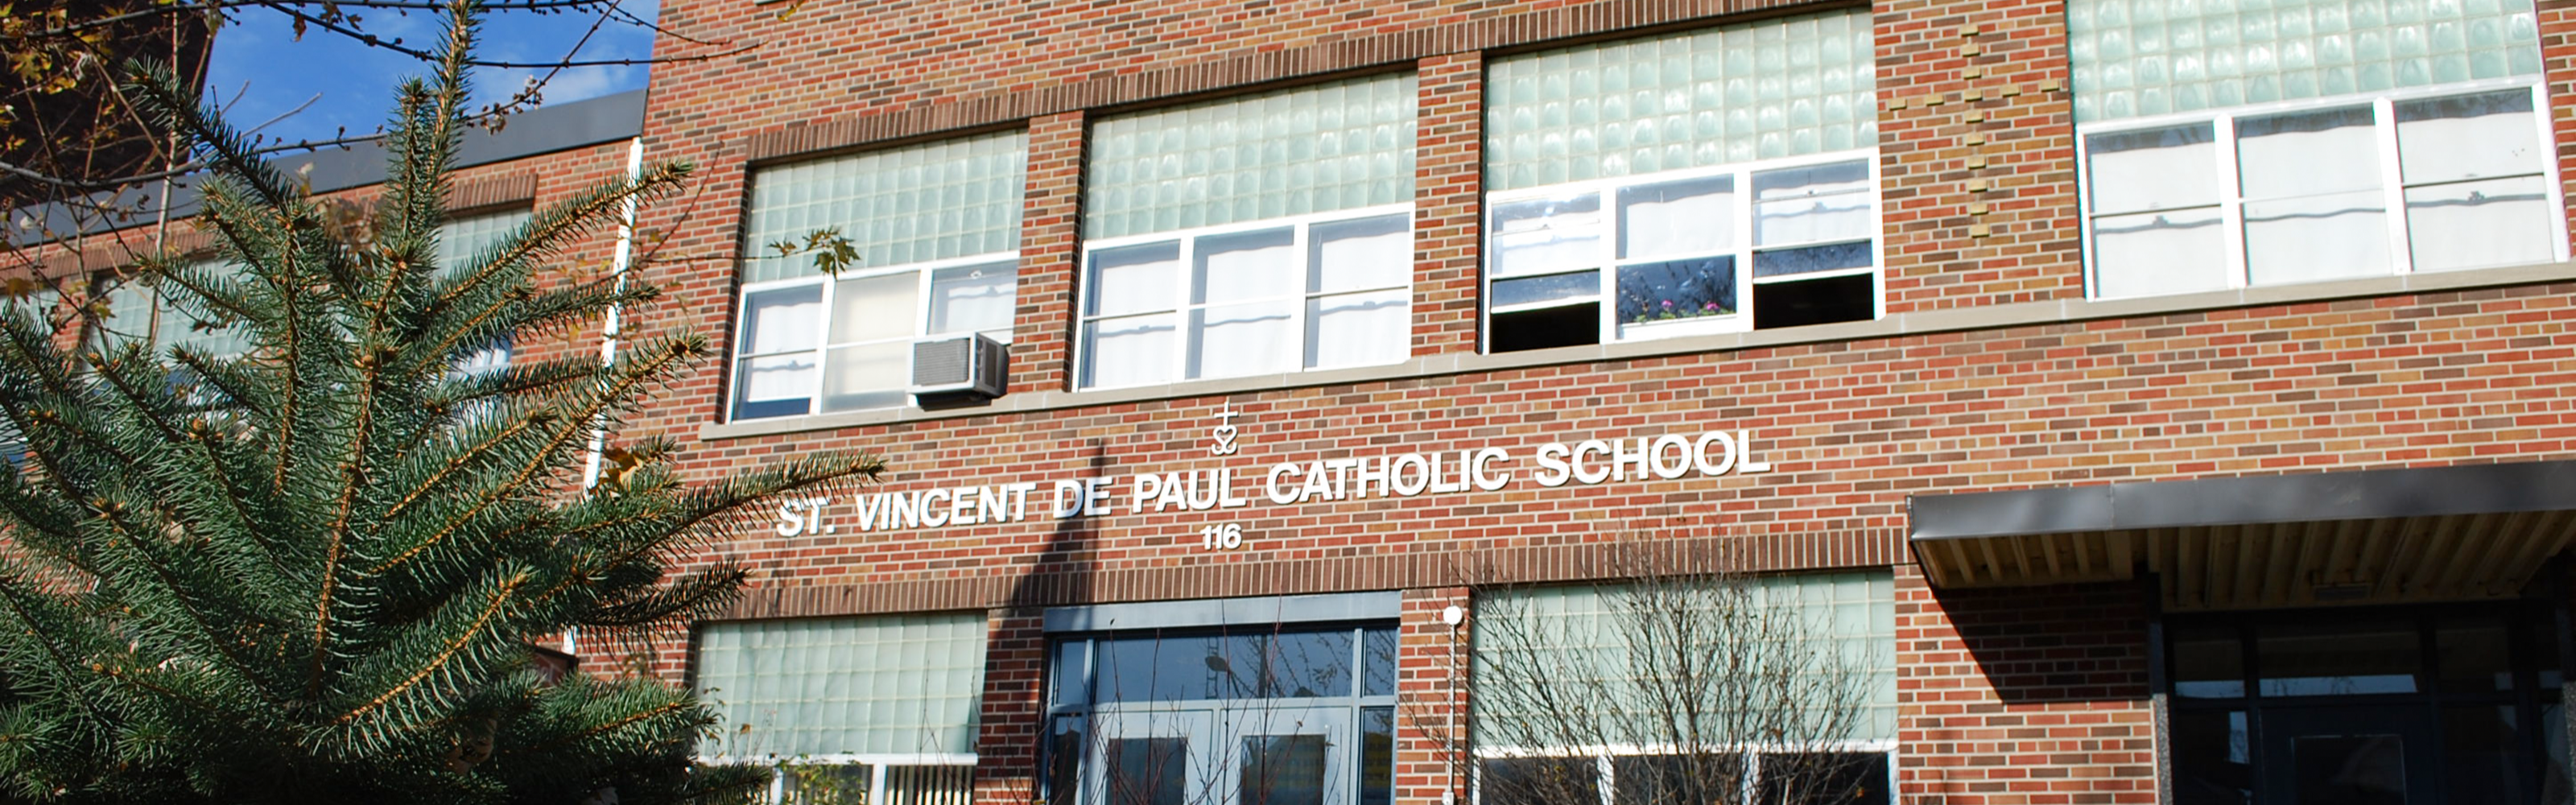 The front of the St. Vincent de Paul Catholic School building.